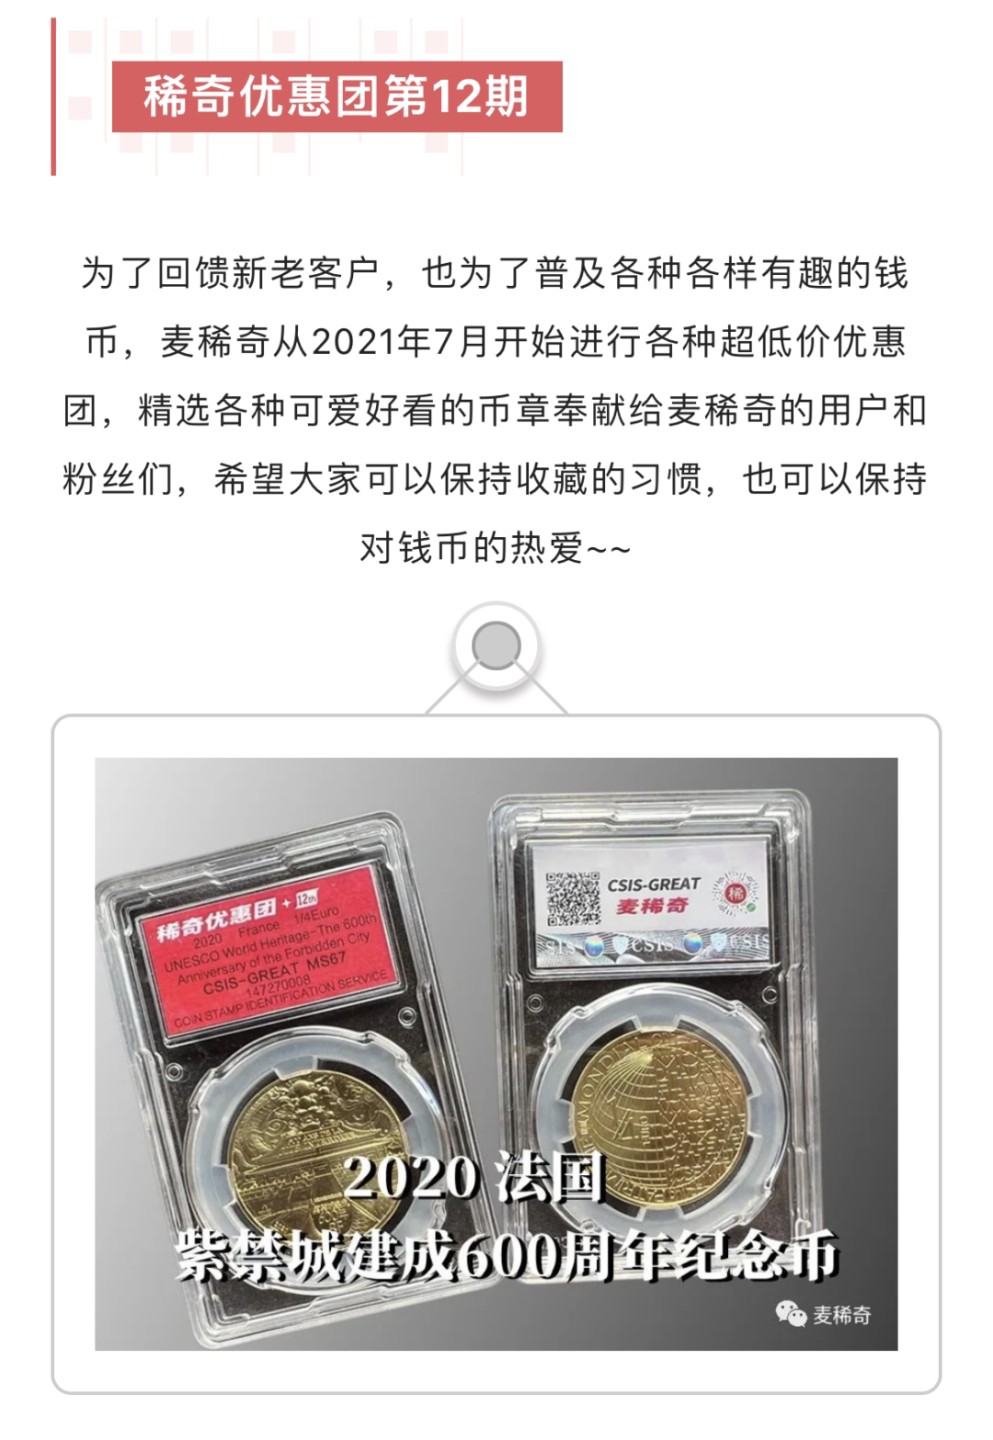 【稀奇优惠团】【第12期】【法国】2020北京紫禁城建成600周年纪念币【2022.11.28】